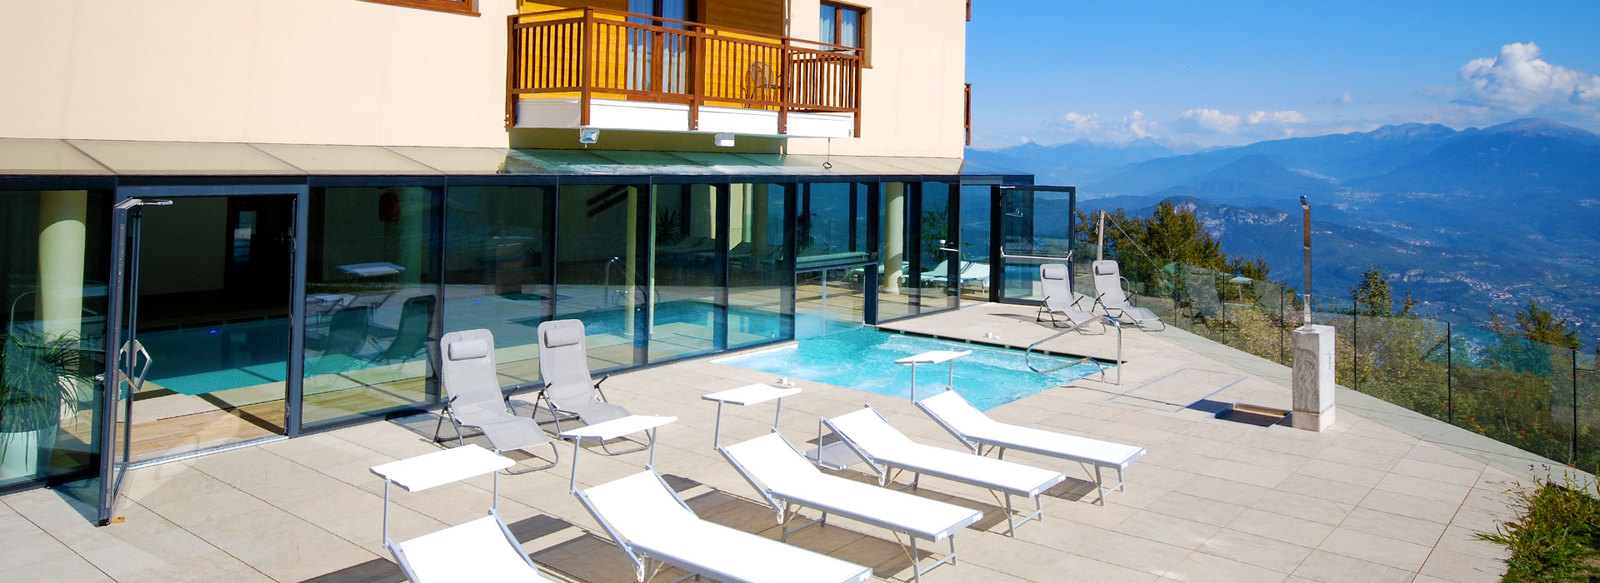 Hotel 3*S a Vason del Monte Bondone, mezza pensione, riduzioni bimbi, 4 notti da € 145